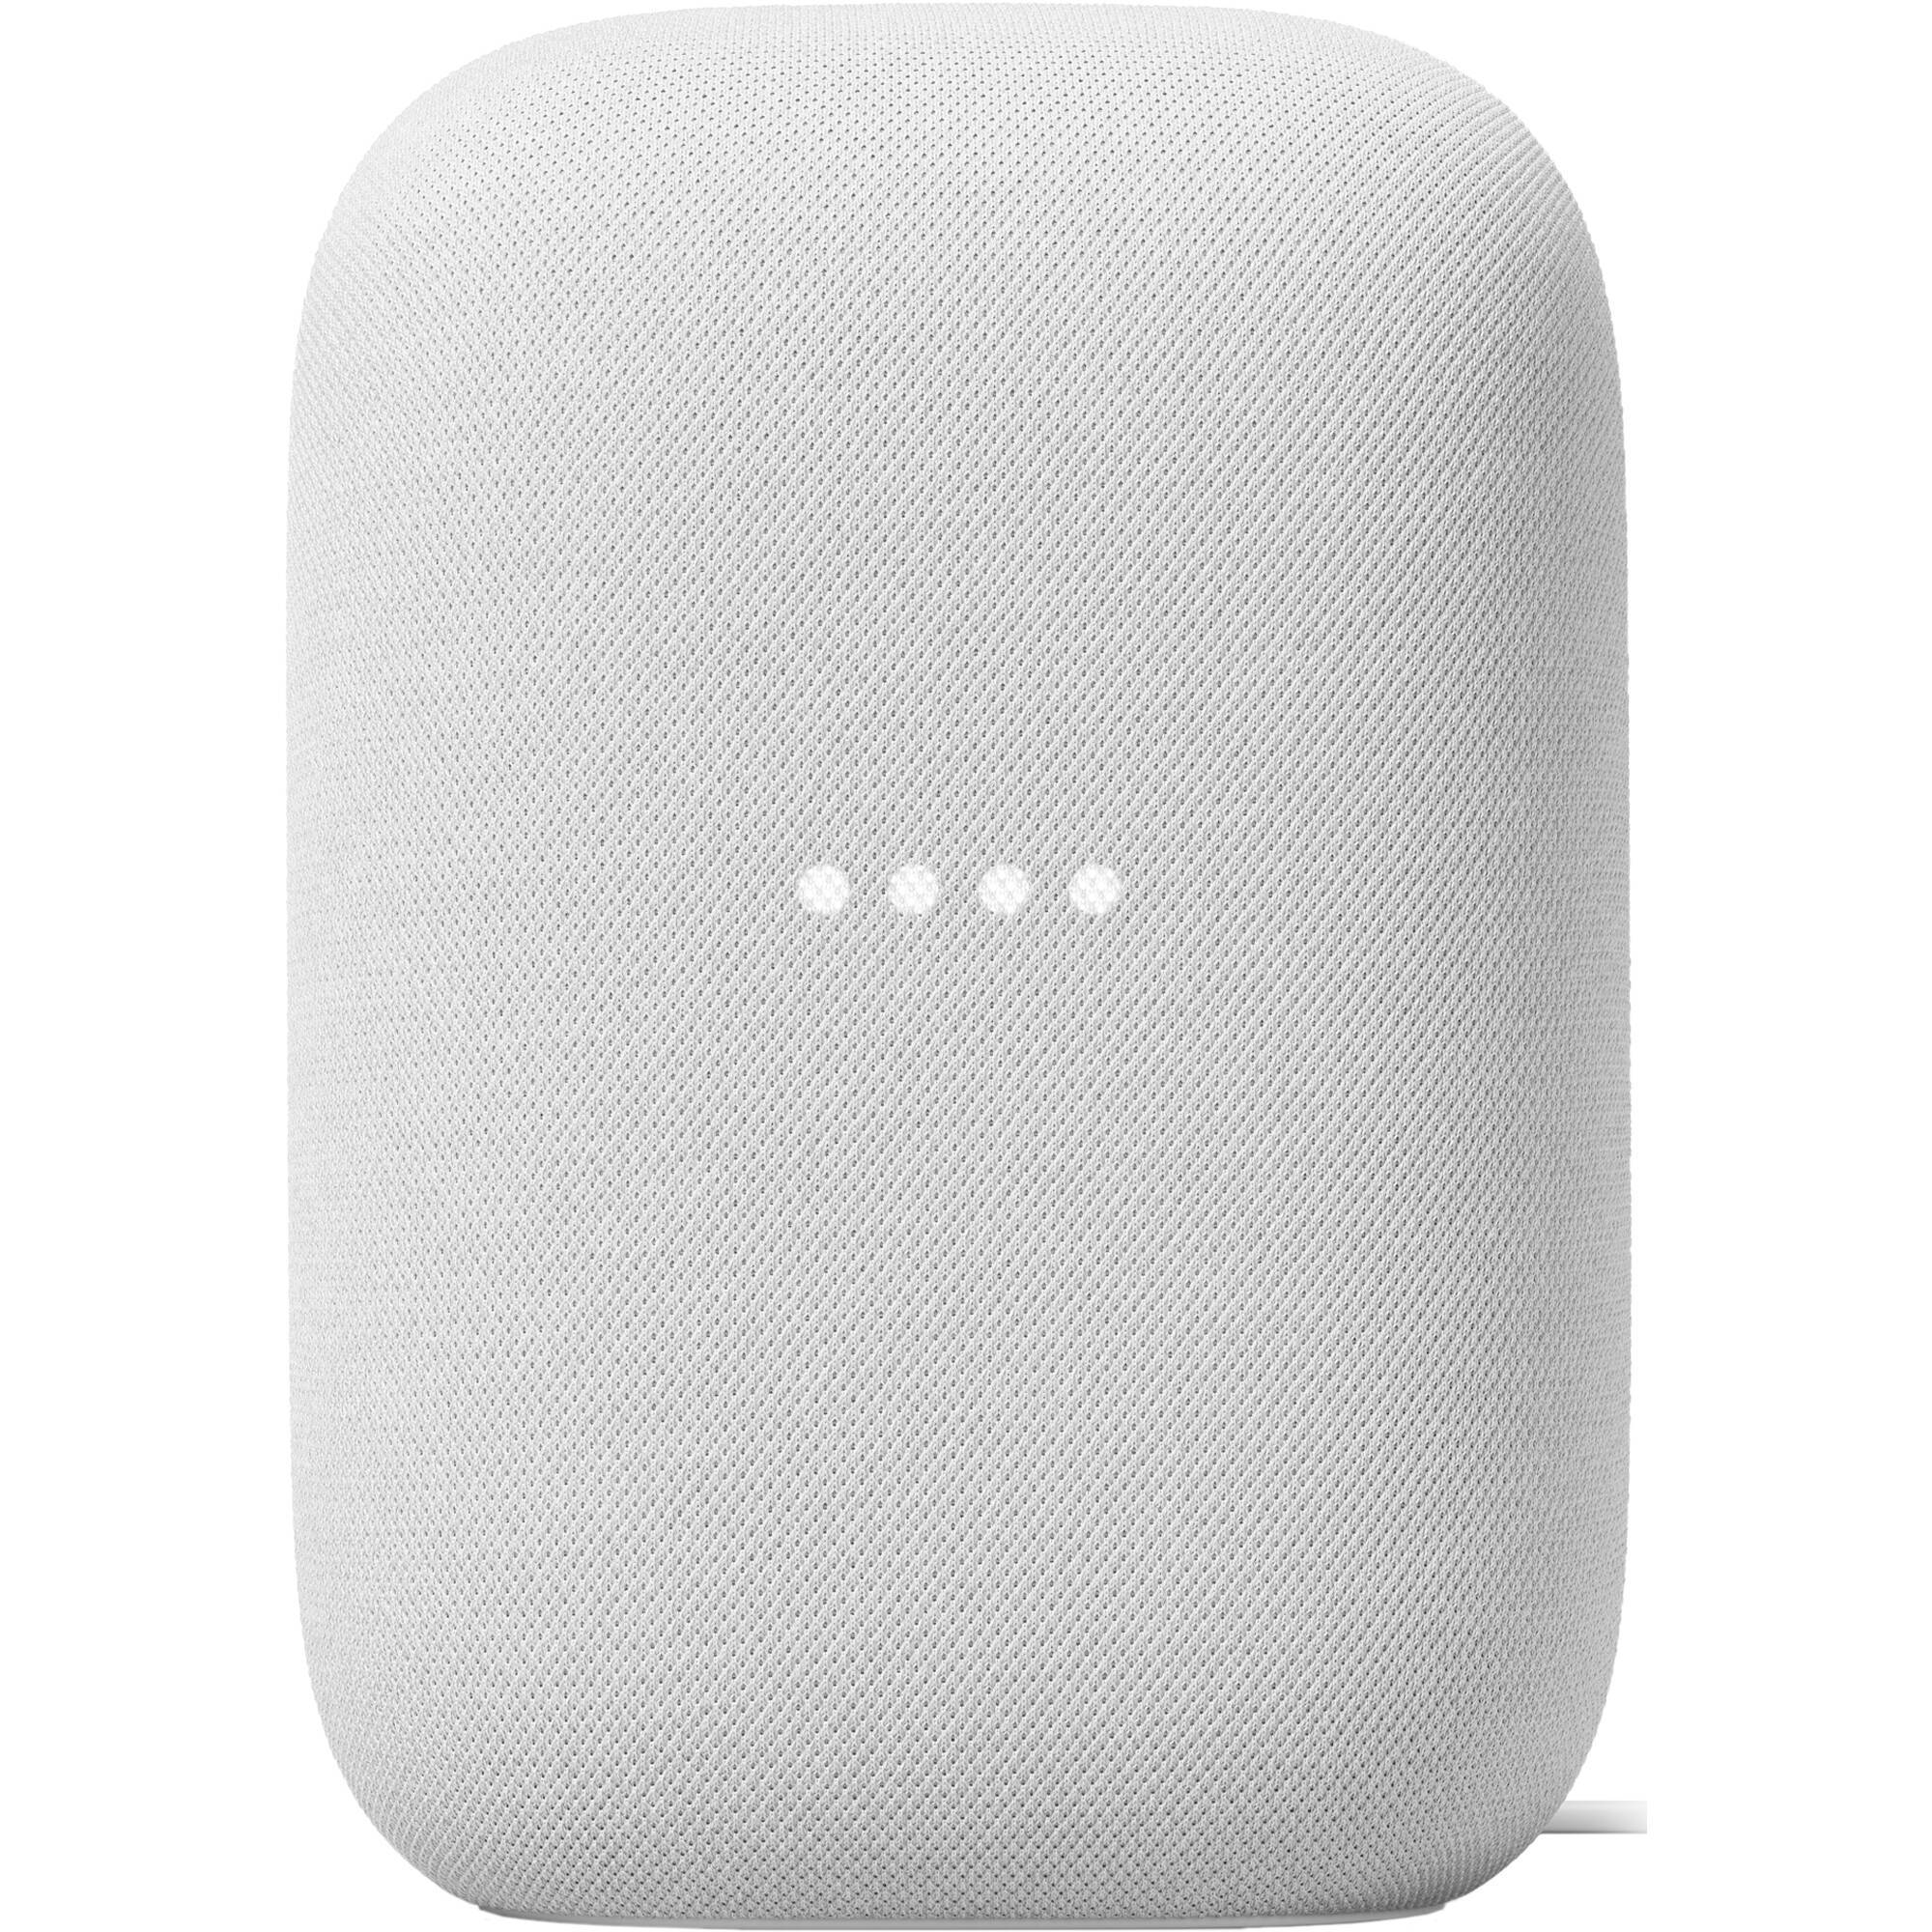 Google Nest Audio Smart Speaker - Chalk - Store 974 | ستور ٩٧٤